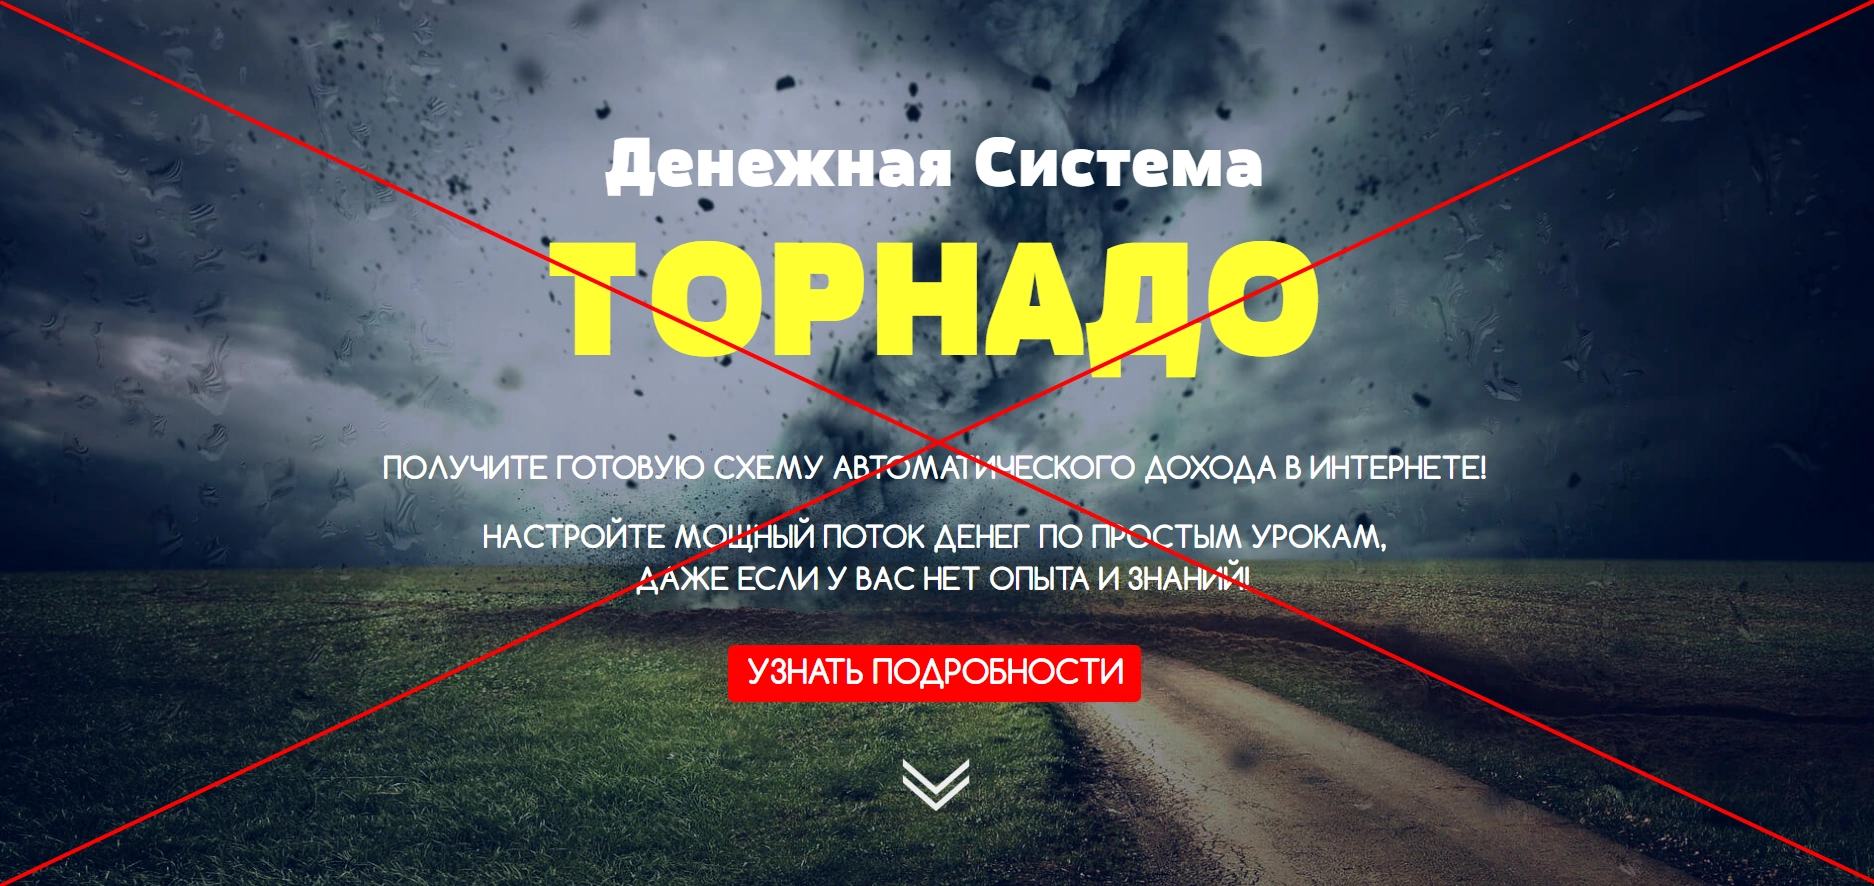 Денежная система Торнадо - отзывы о курсе Максима Калашника